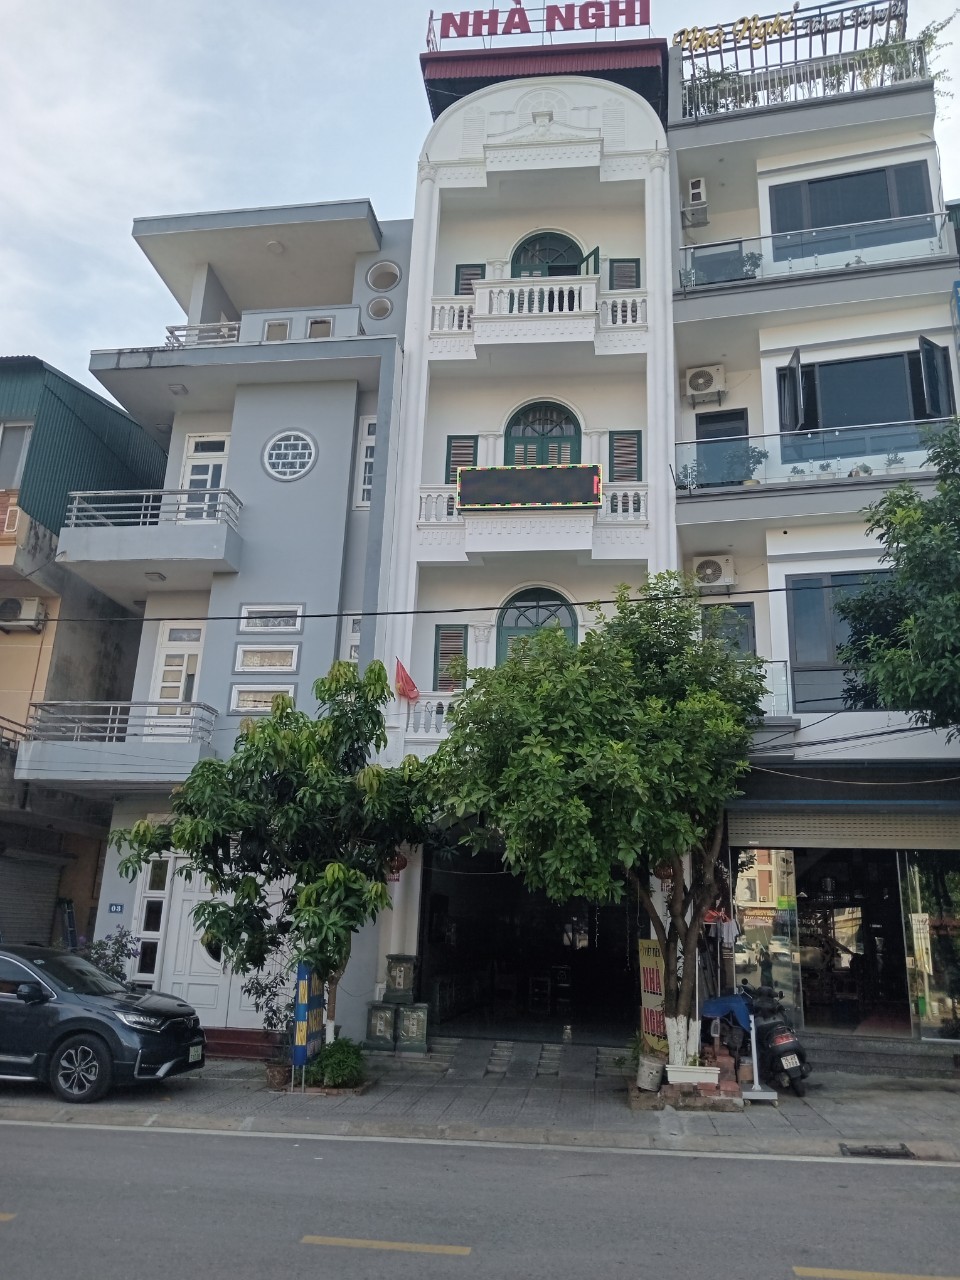 Nhà nghỉ chất lượng tốt, giá rẻ ở thị trấn Bình Liêu